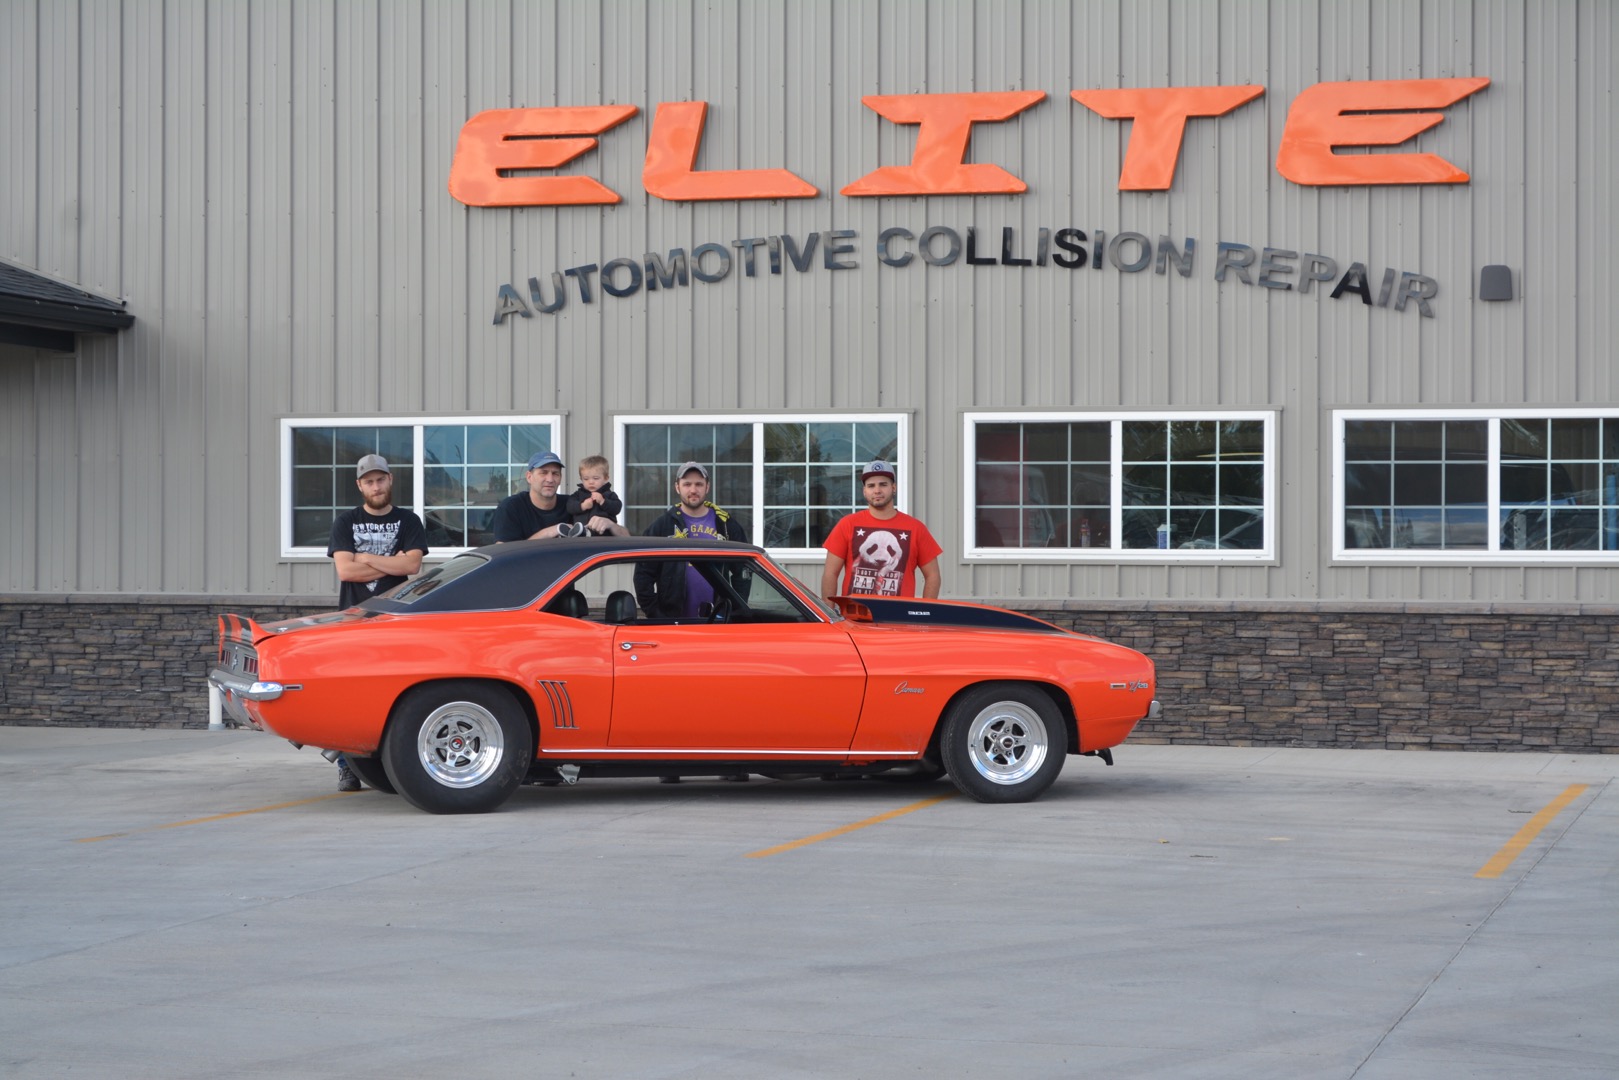 Elite Automotive Collision Repair